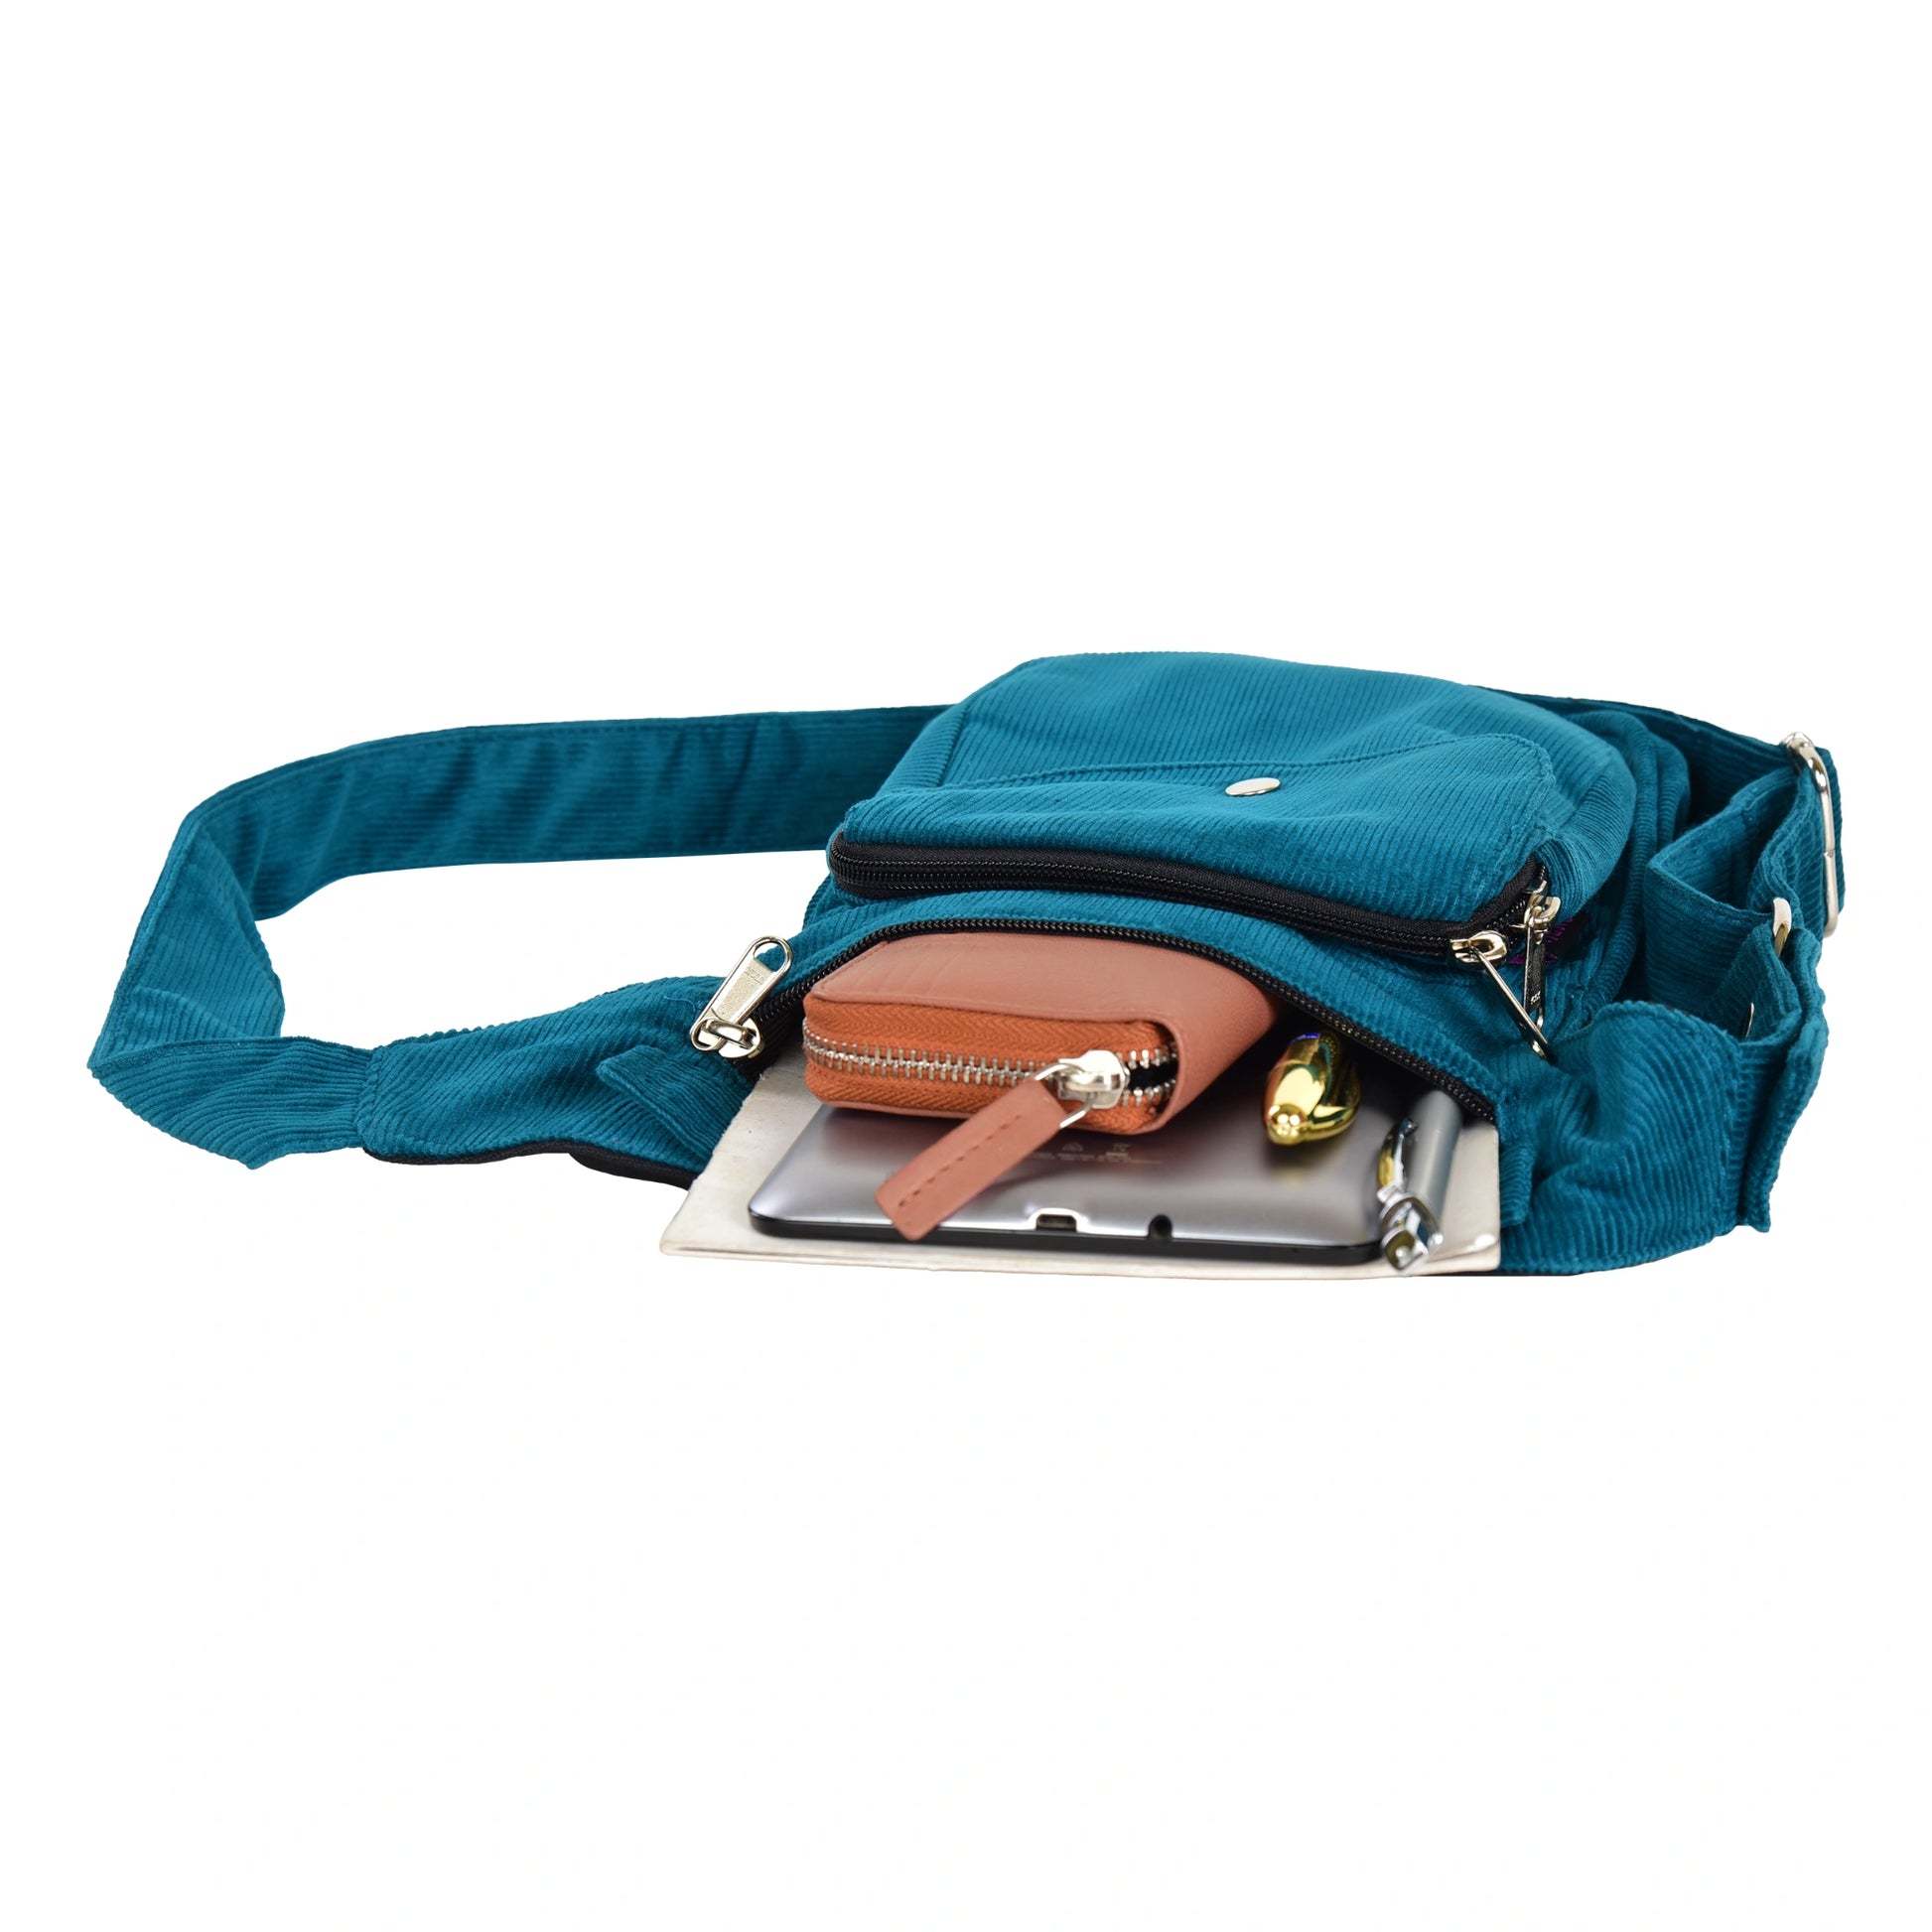 Gürteltasche, Gassi-Tasche aus Cord Blau. Das Hauptfach und vordere Reißverschlussfach bietet Platz für Handy, Portemonnaie und andere Kleinigkeiten.